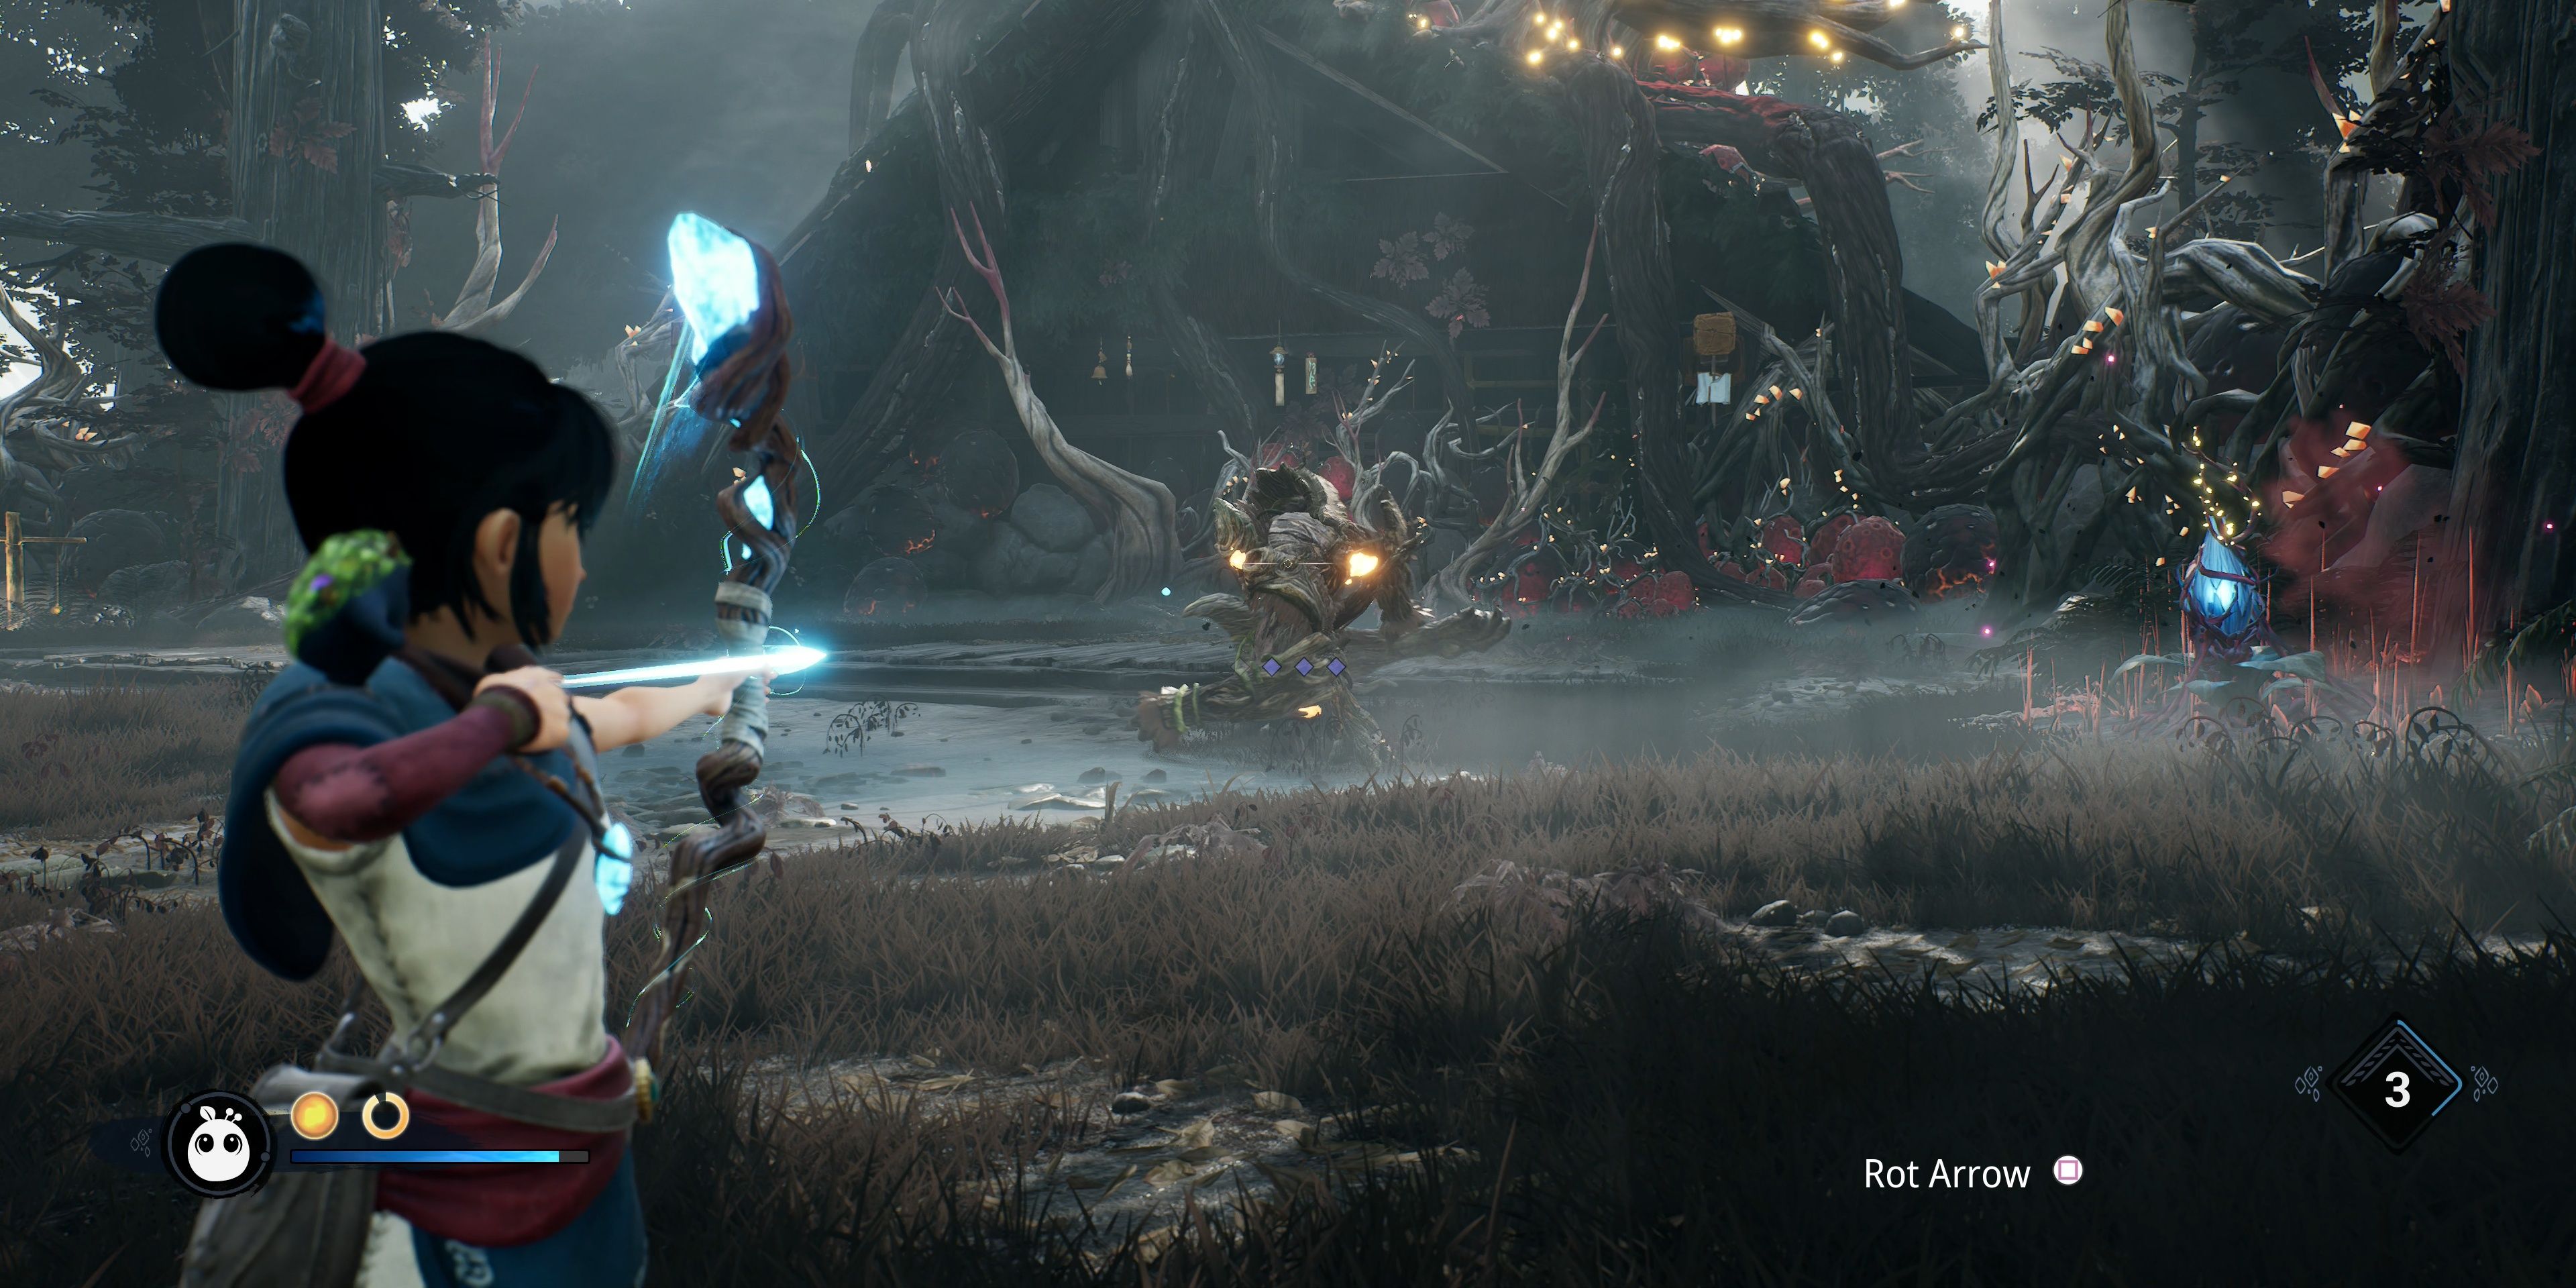 A screenshot showing gameplay in Kena: Bridge of Spirits